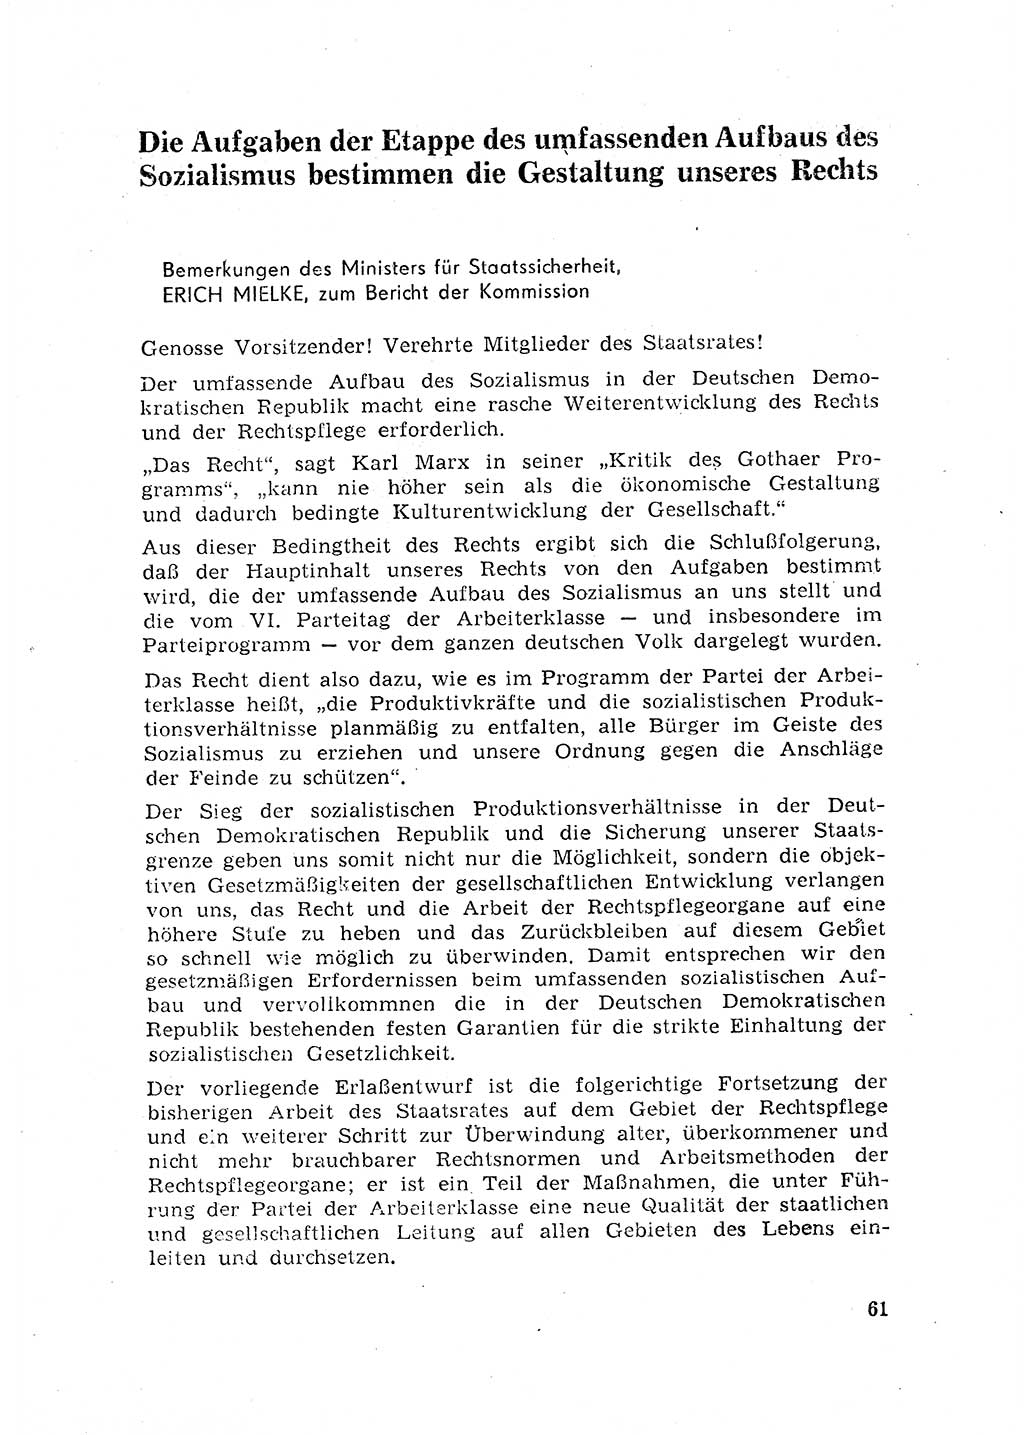 Rechtspflegeerlaß [Deutsche Demokratische Republik (DDR)] 1963, Seite 61 (R.-Pfl.-Erl. DDR 1963, S. 61)